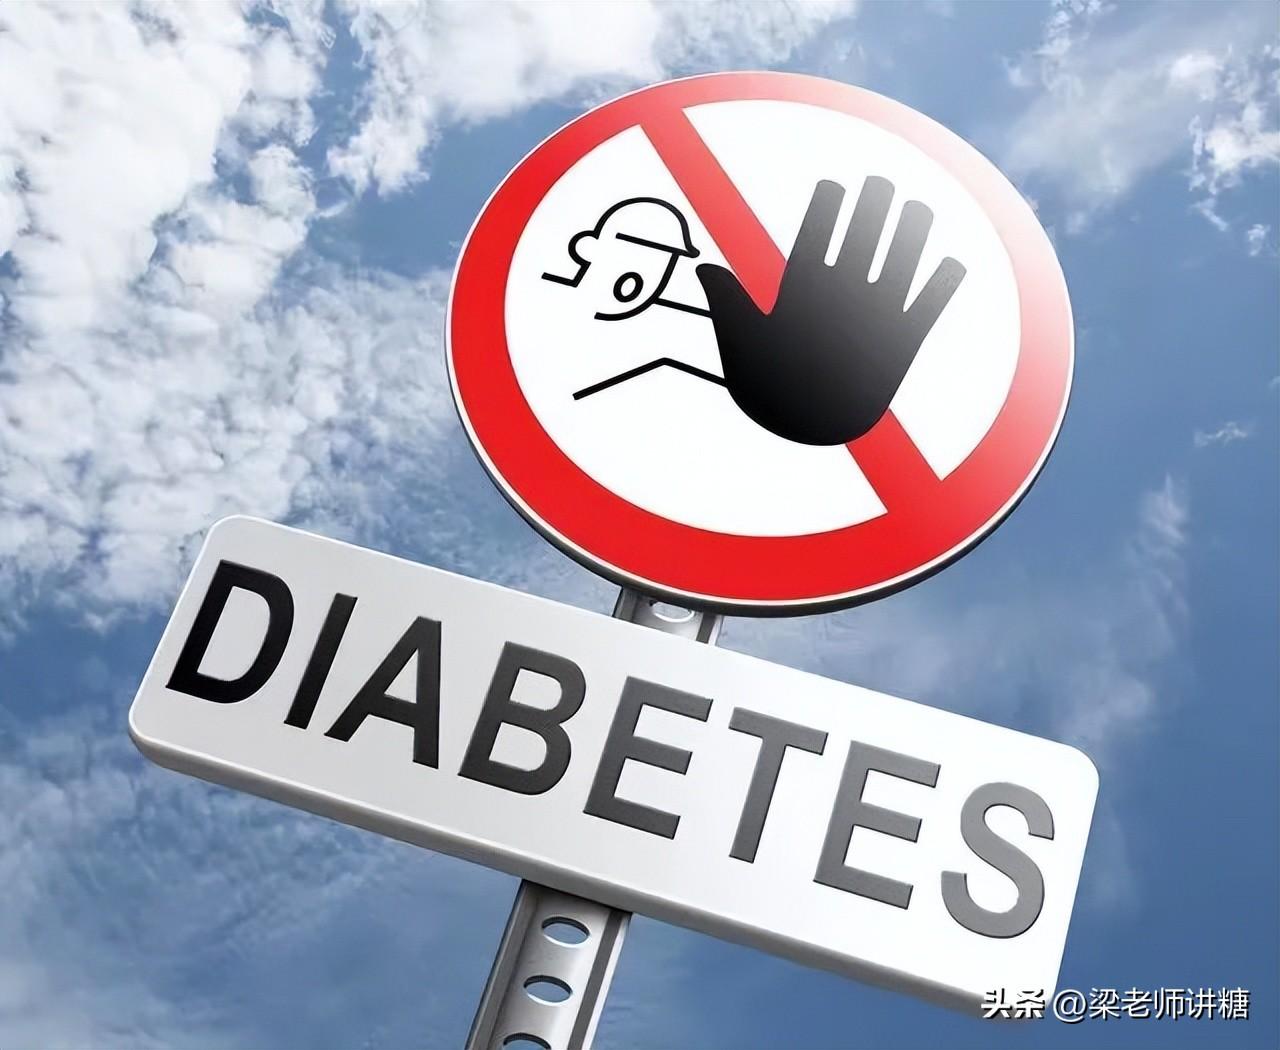 家人患有糖尿病，我们如何预防自己也被找上？